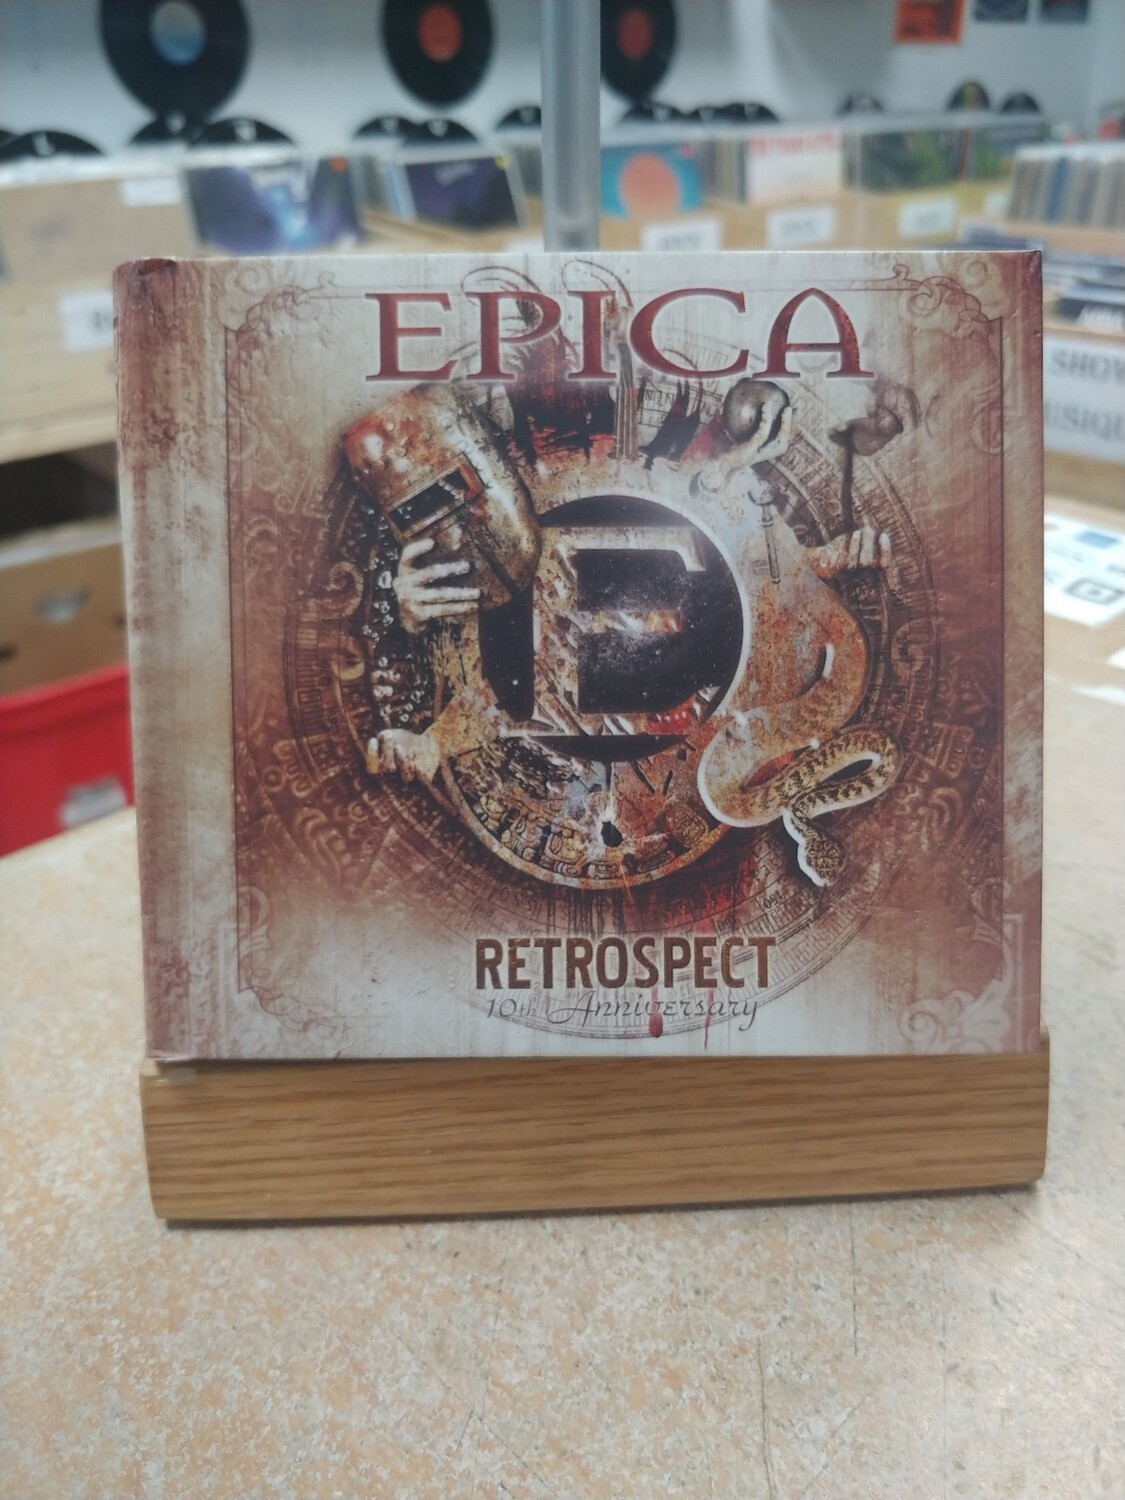 Epica - Retrospect 10th Anniversary (CD)